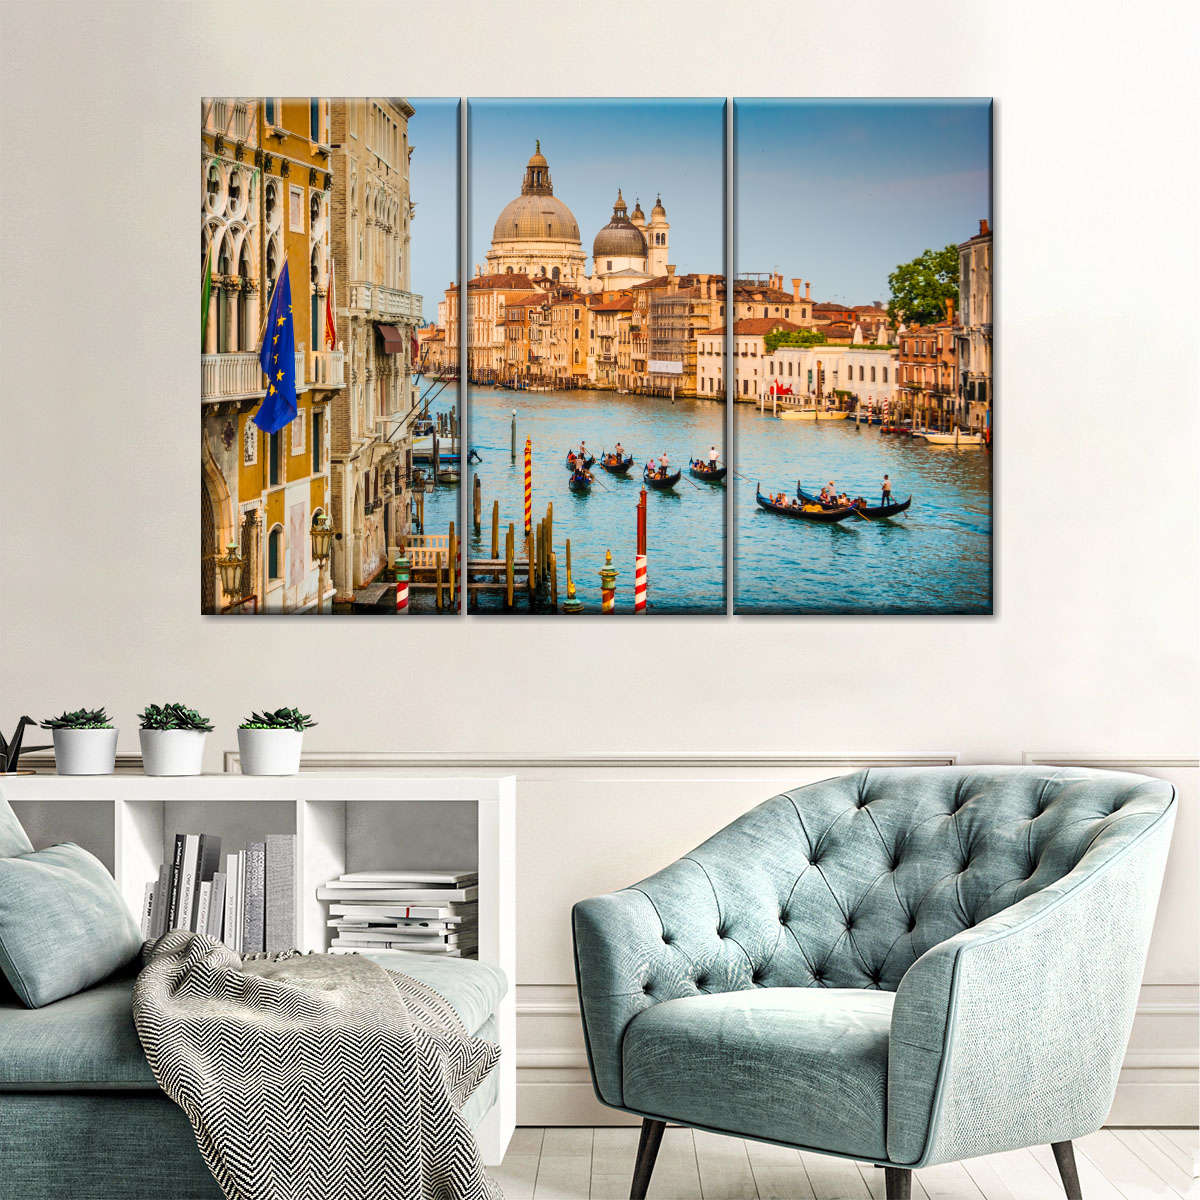 Venice Gondola Ride Wall Art | Photography